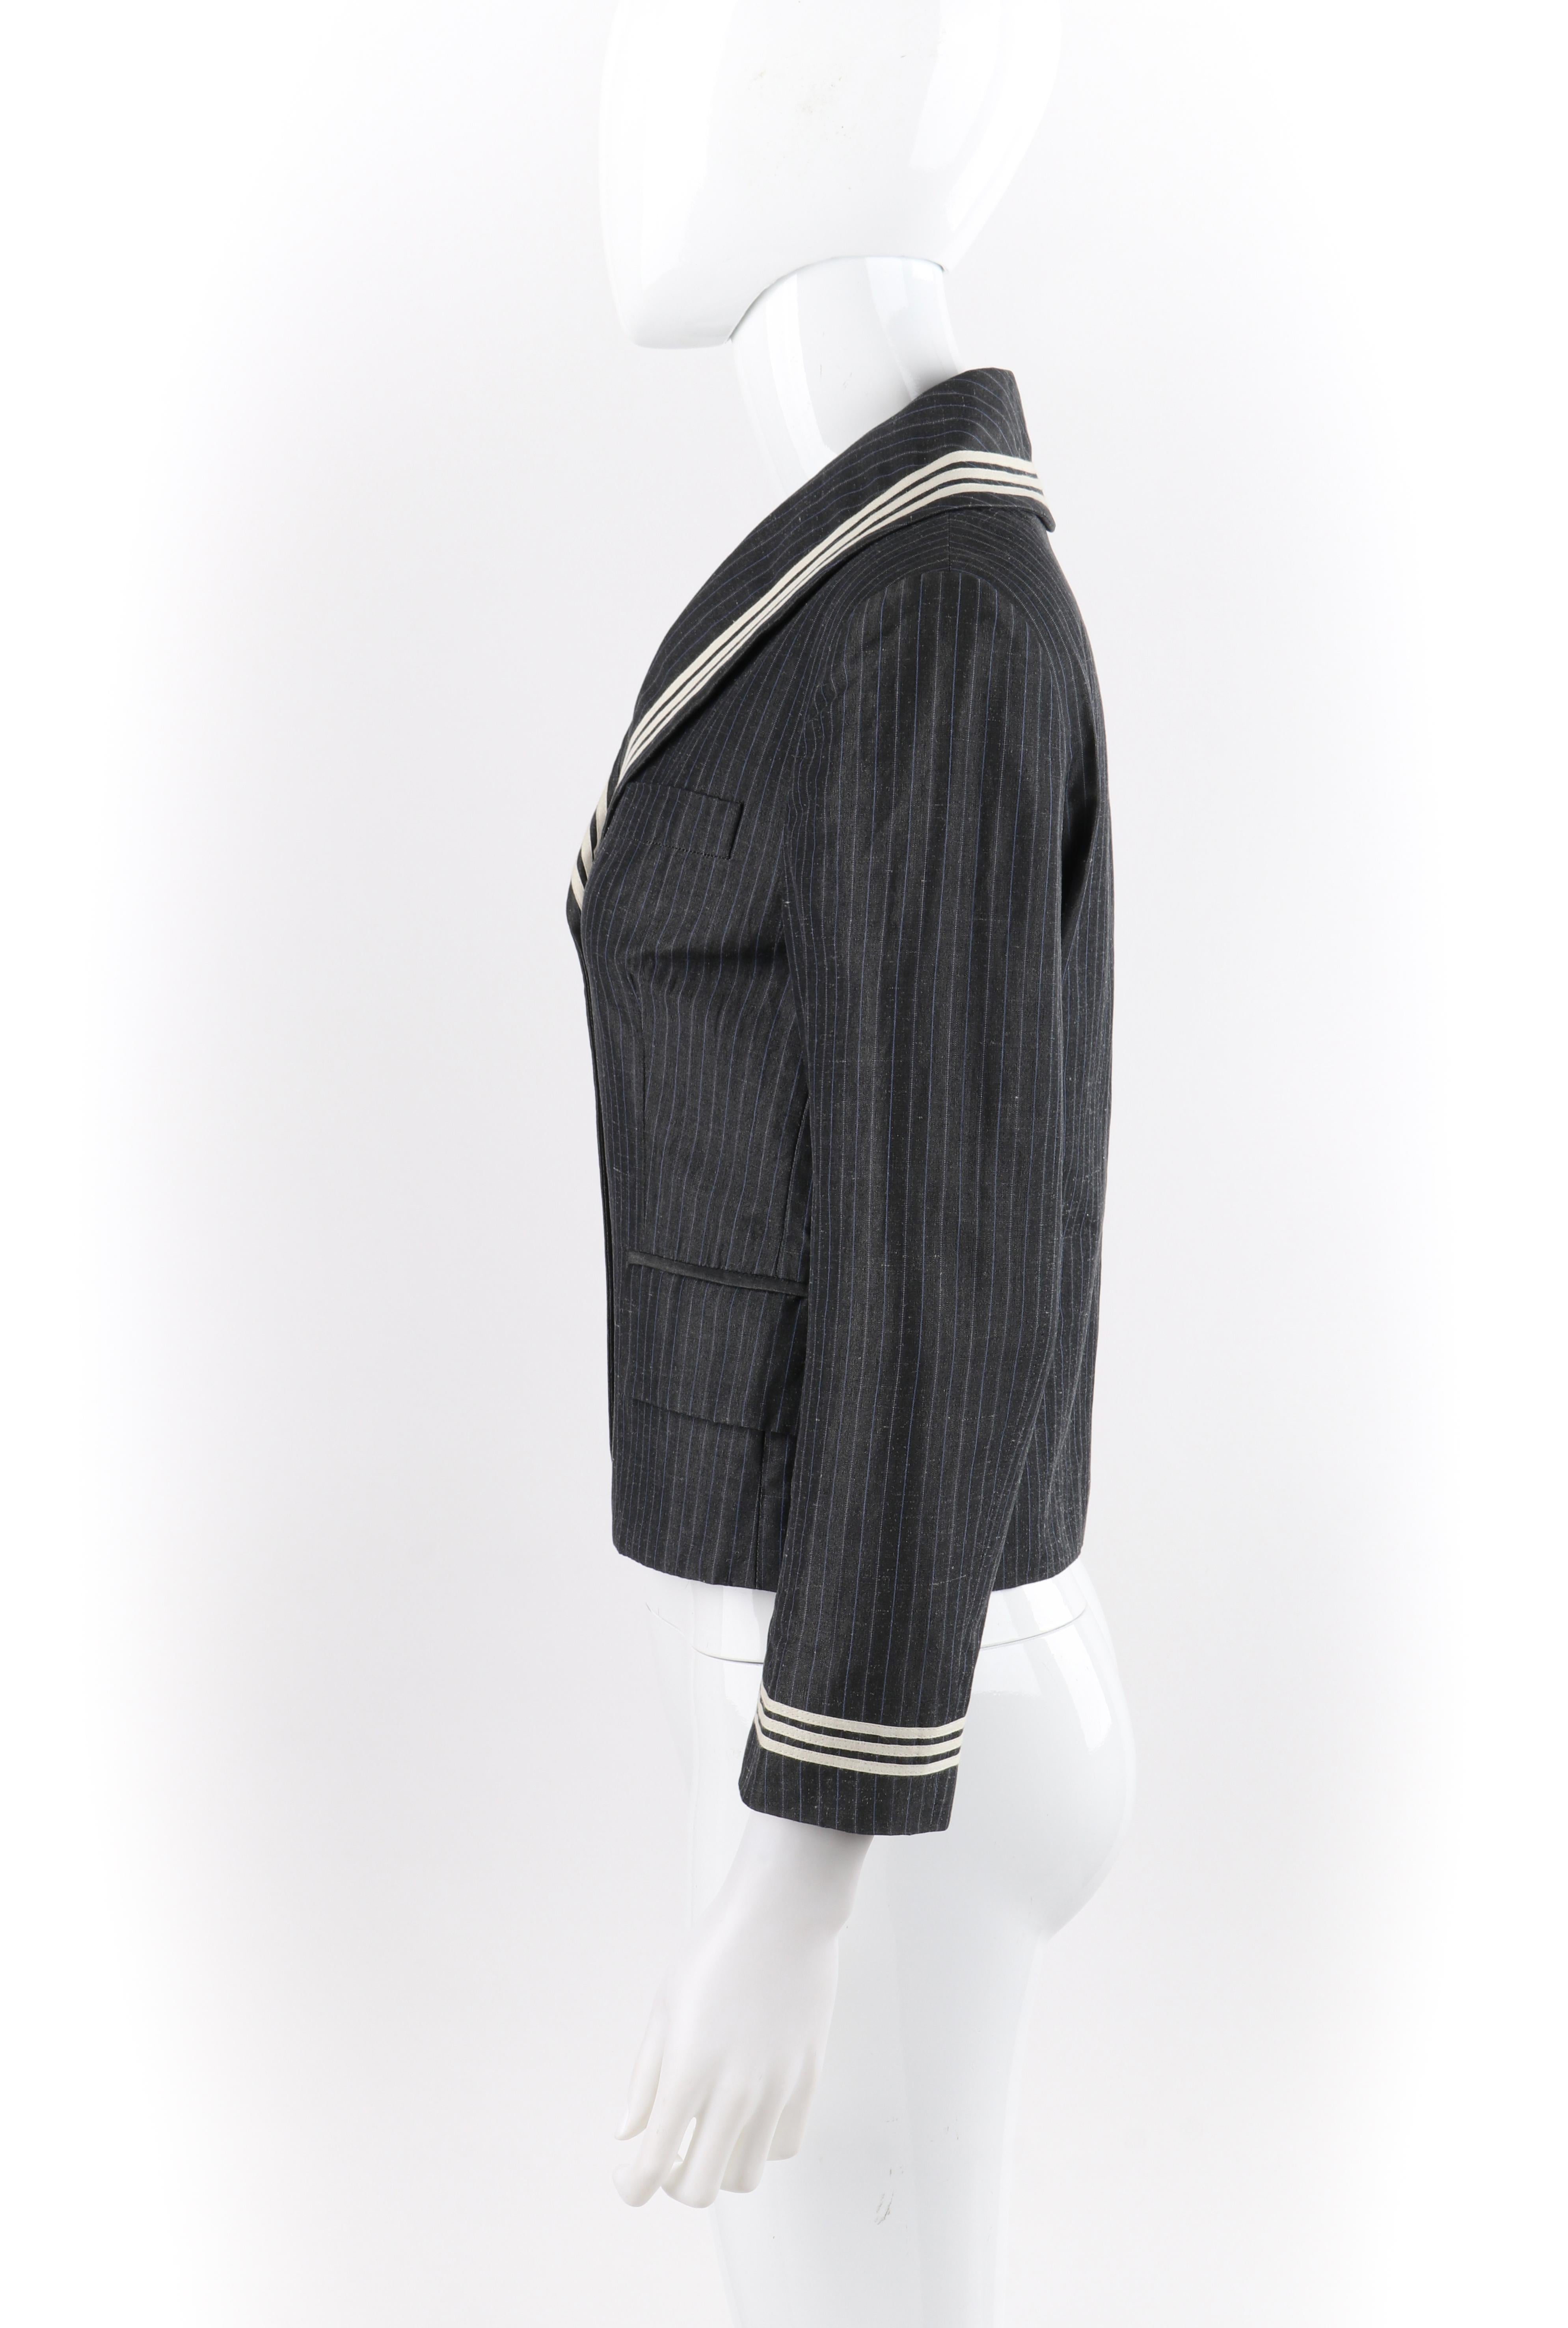 ALEXANDER McQUEEN S/S 2005 Grey Pinstripe Sailor Blazer Jacket Shawl Collar 1